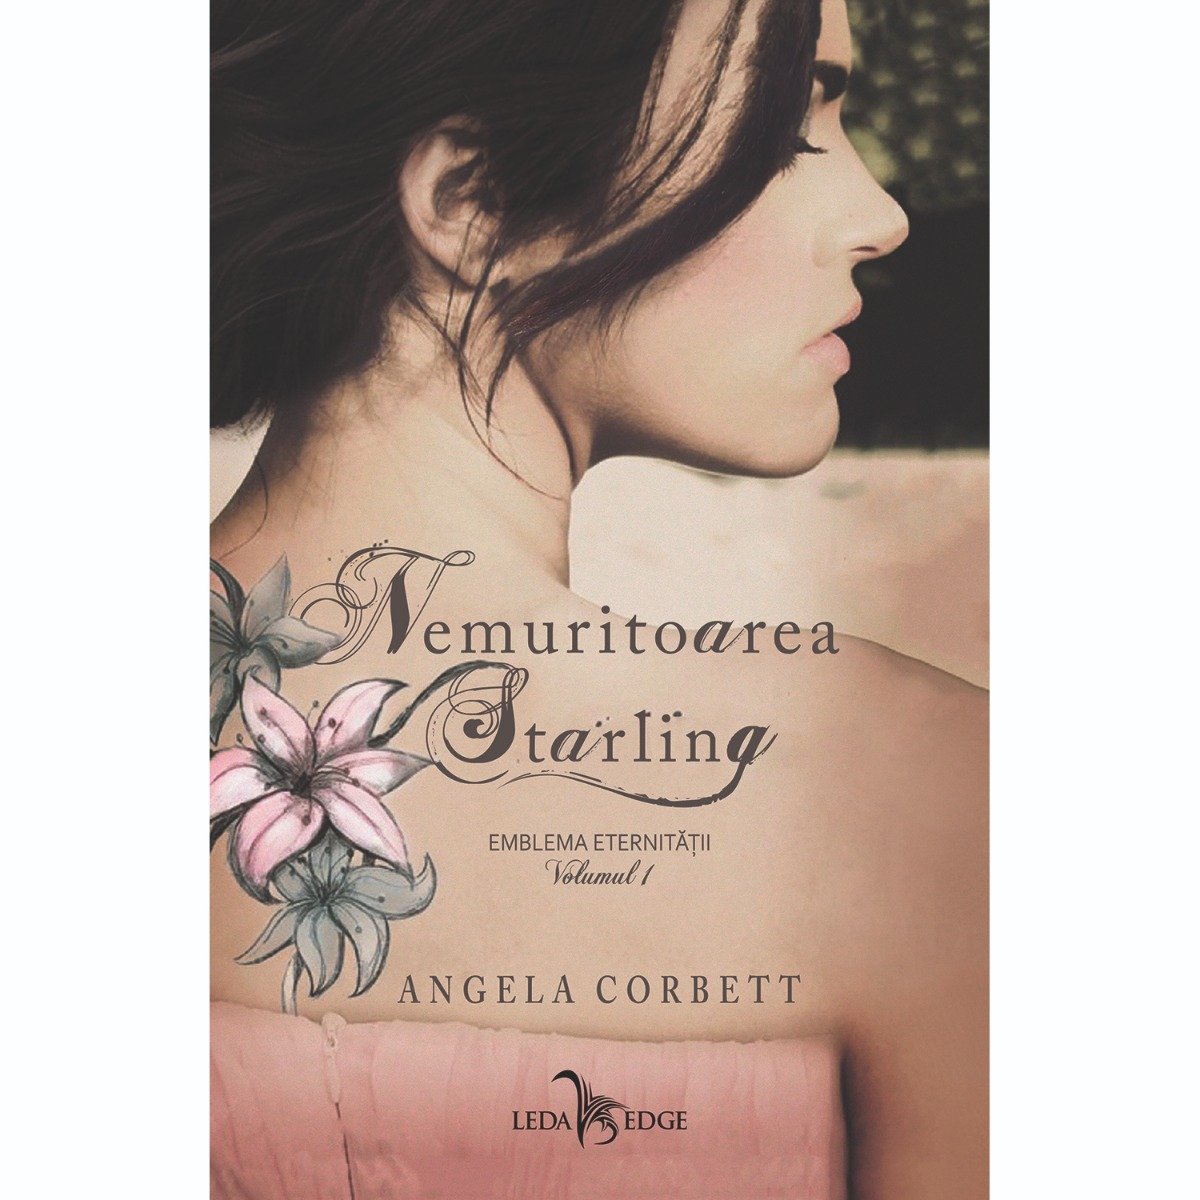 Carte Editura Corint, Nemuritoarea Starling vol.1 Emblema eternitatii, Angela Corbett Angela